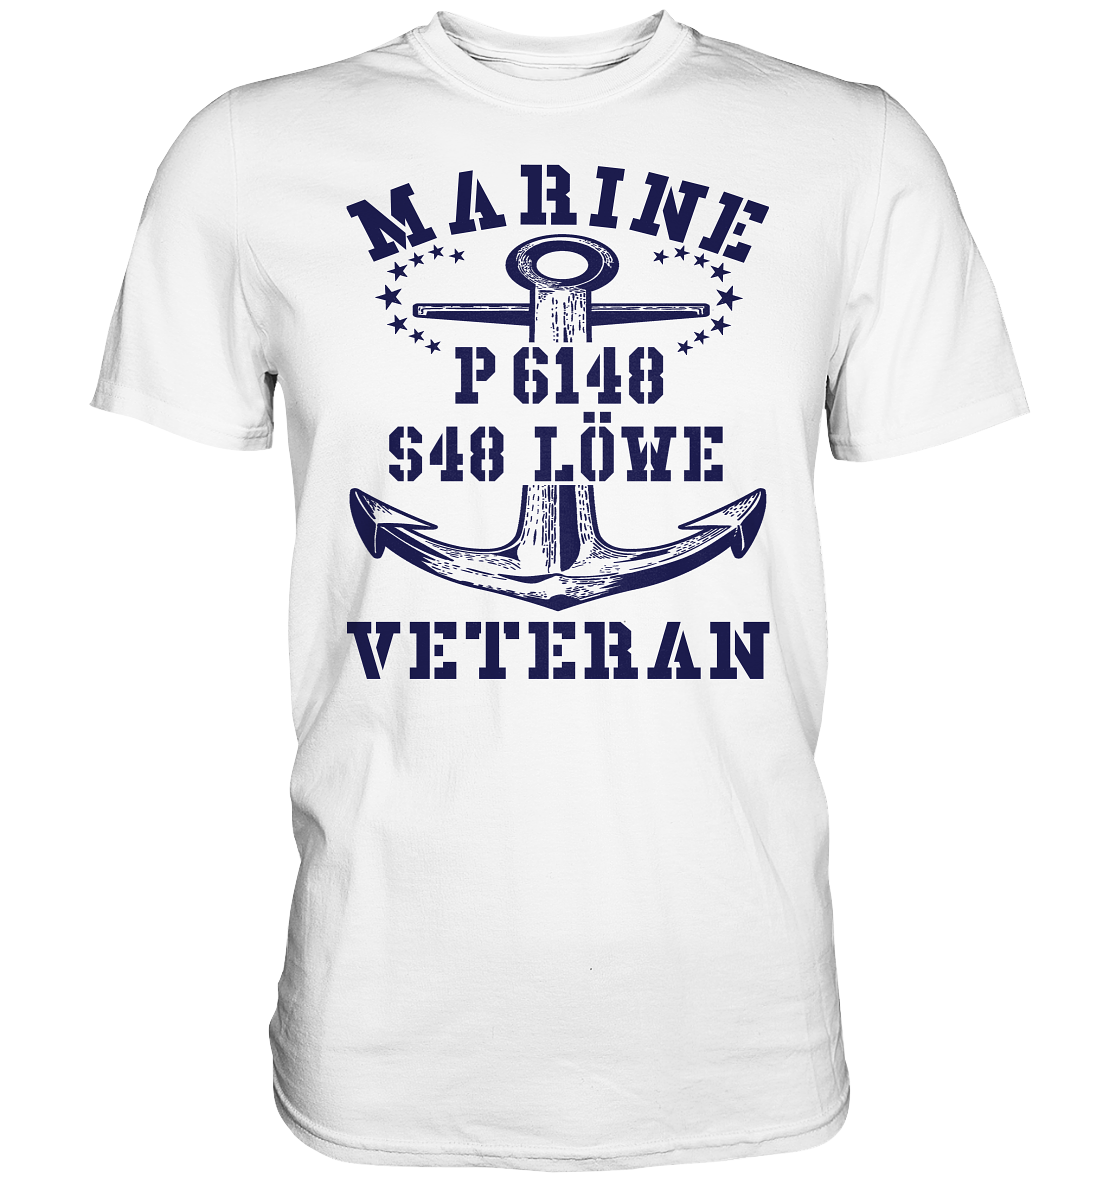 P6148 S48 LÖWE Marine Veteran - Premium Shirt